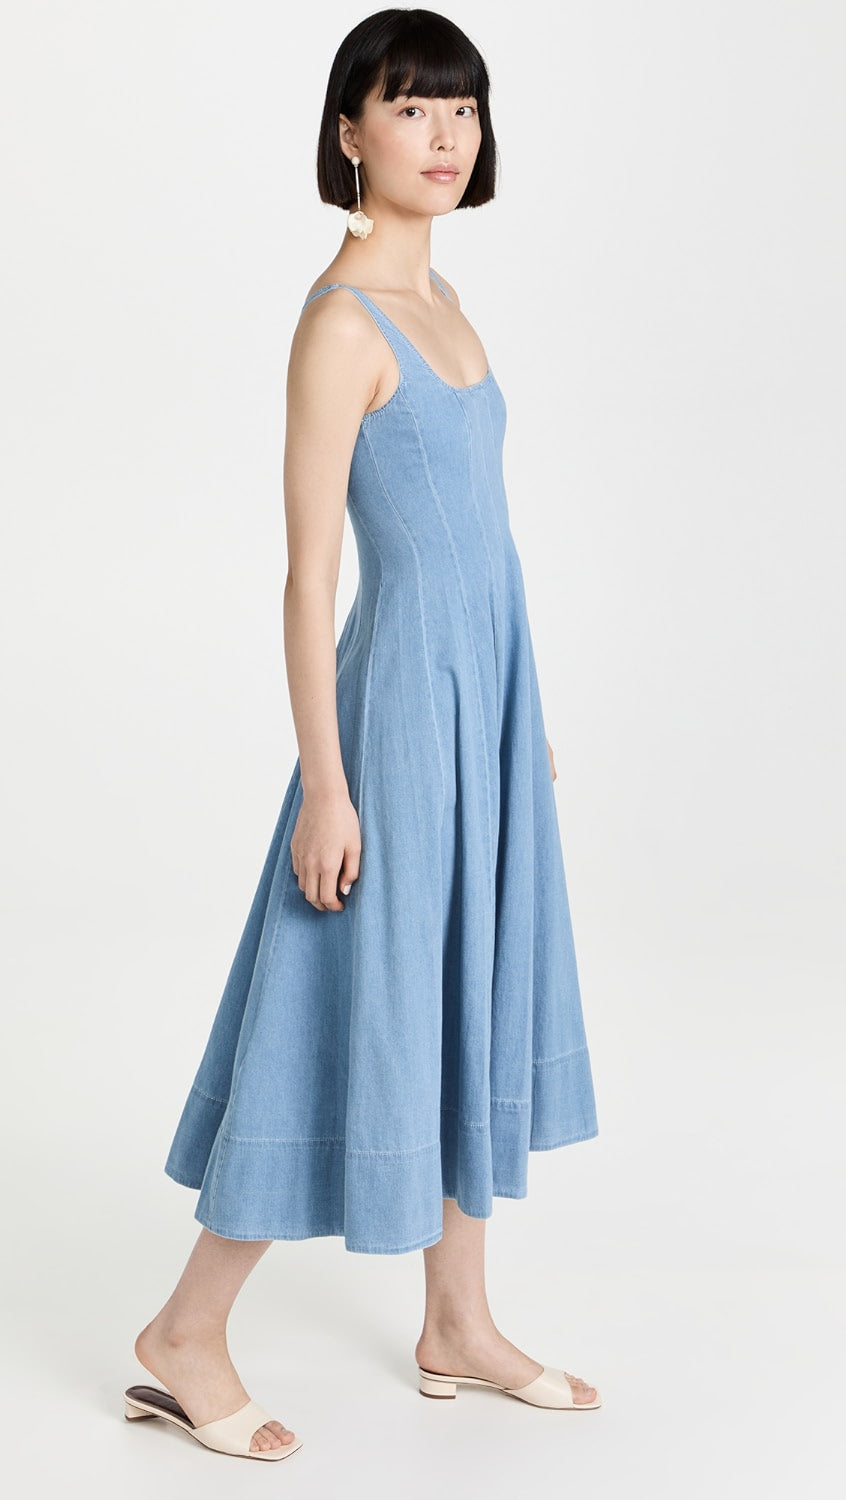 Std Wells Midi Dress - Light Wash Blue Denim